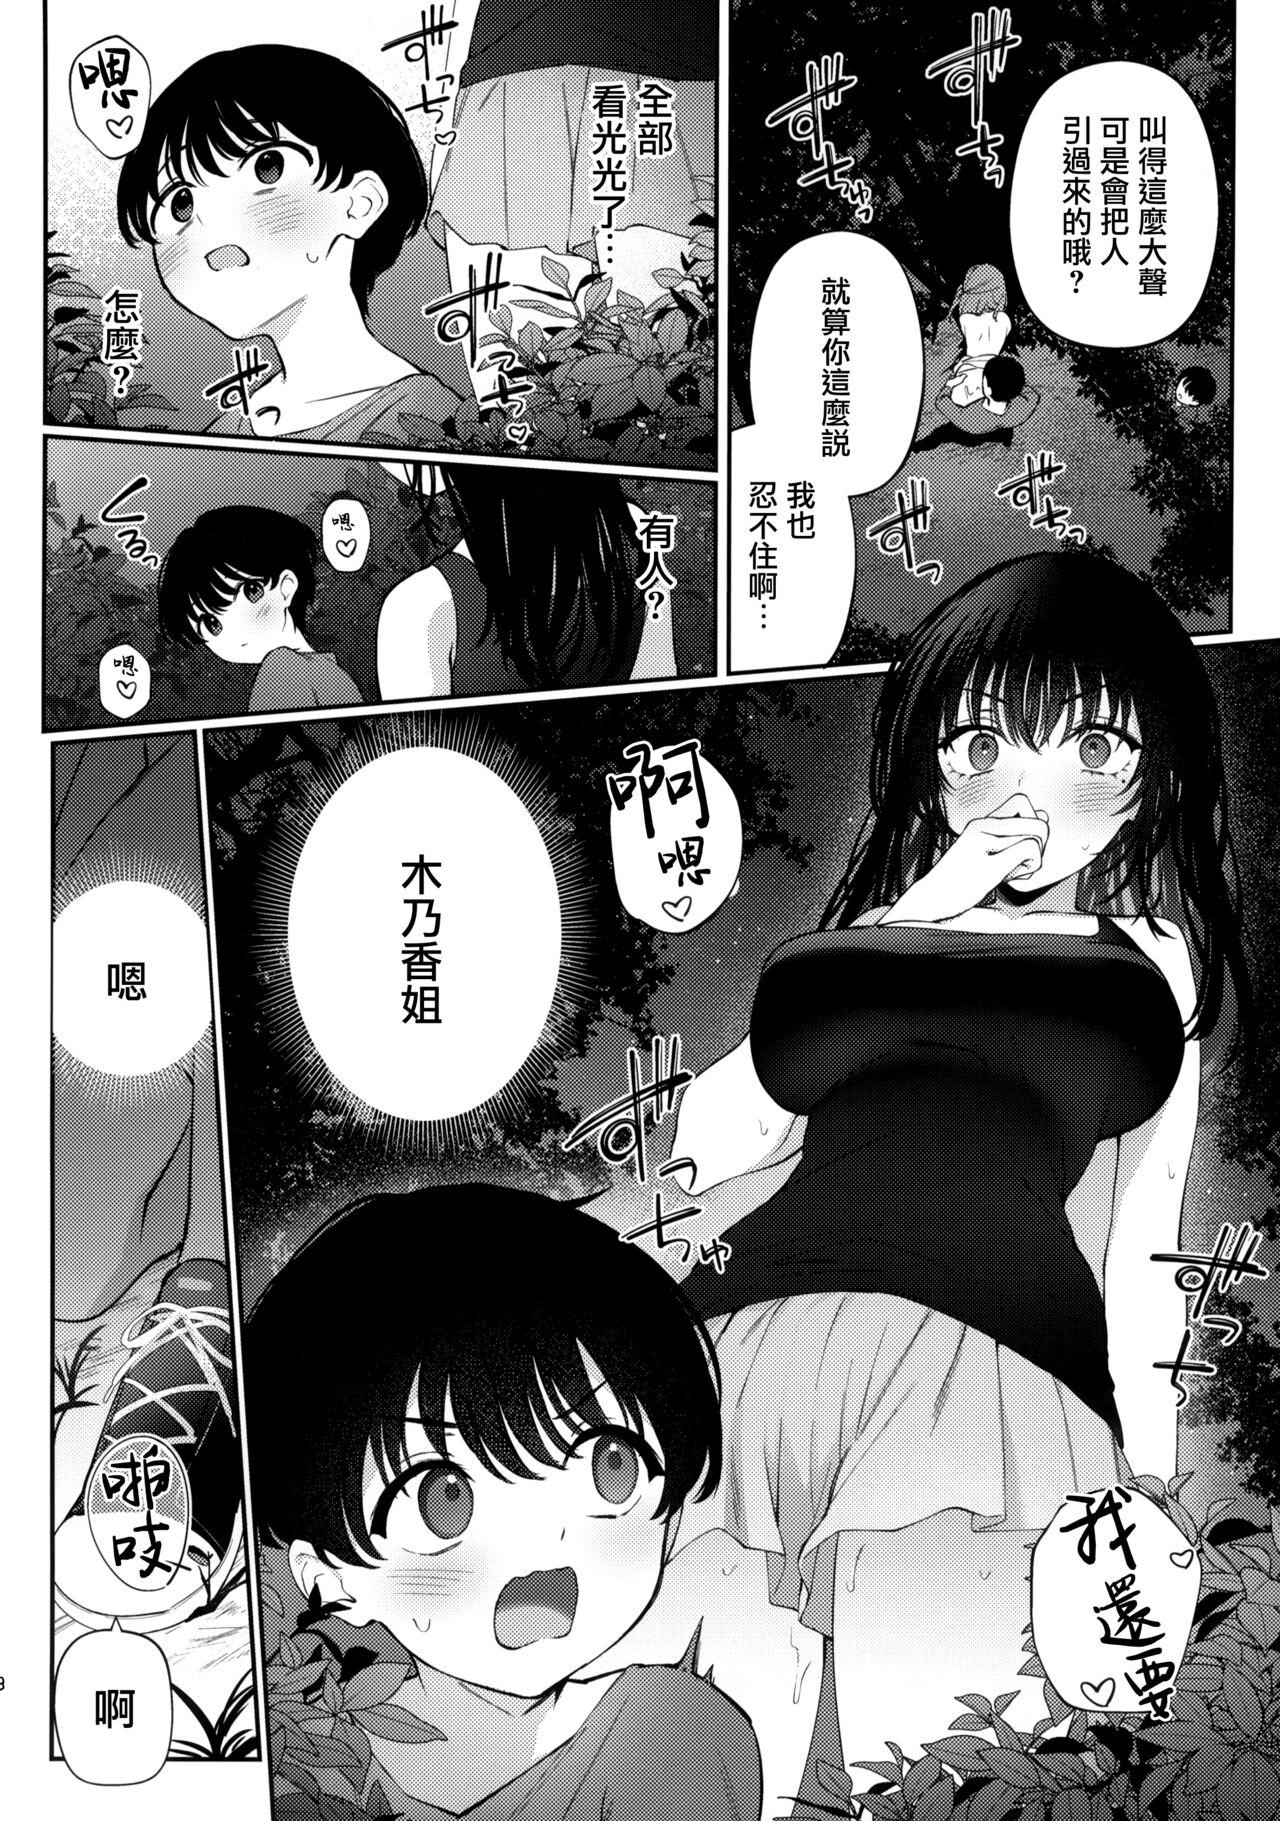 Playing Boku no Natsuyasumi no Omoide - Original Dirty Talk - Page 8